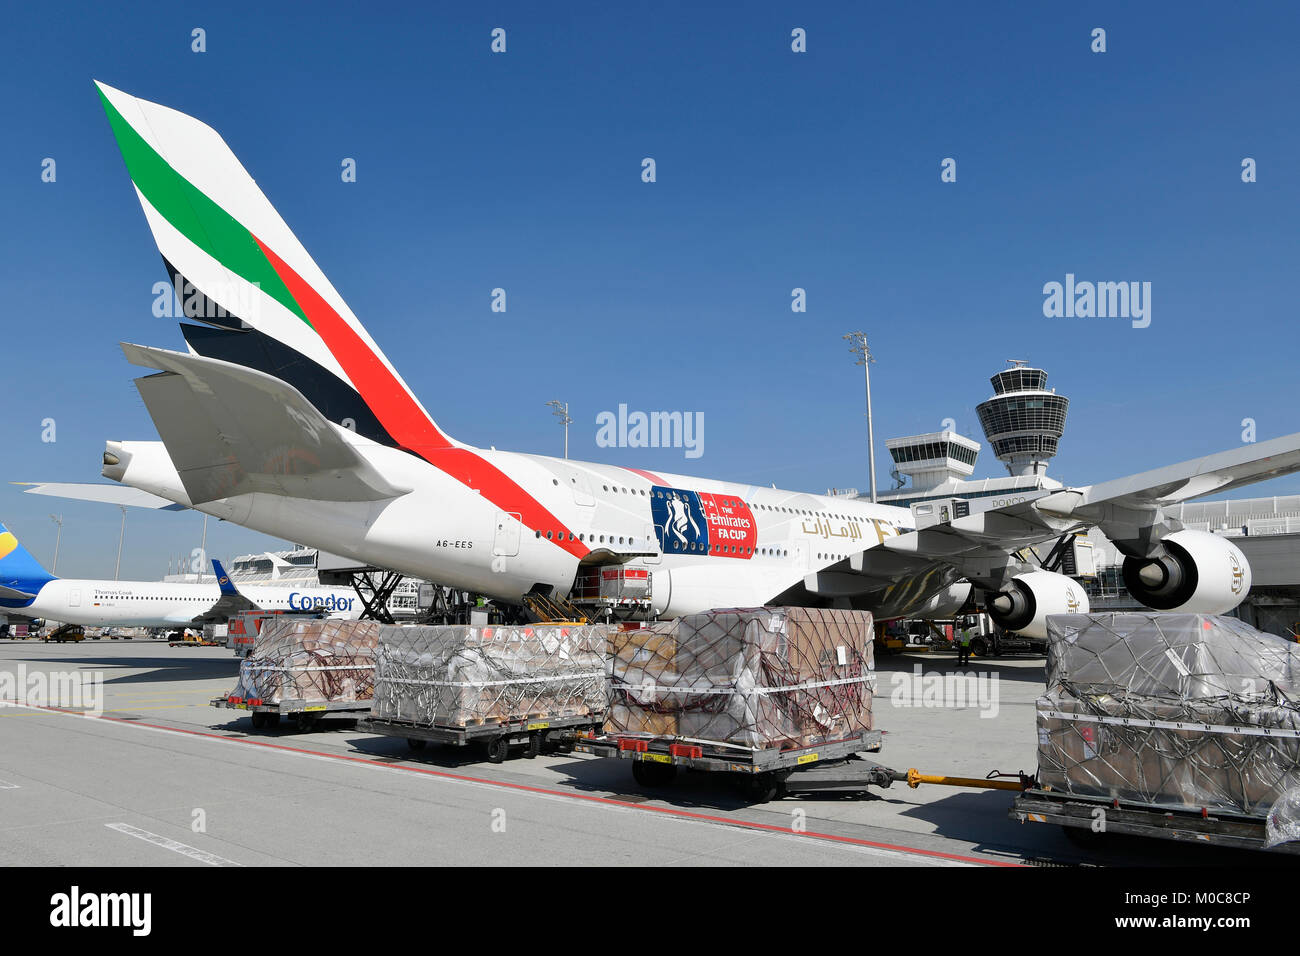 Unis, Airbus, A380-800, A380, 800, avion, avion, avion, aéroport de Munich, terminal 1, tour, position, rampe, Cargo, peur, remorque Banque D'Images